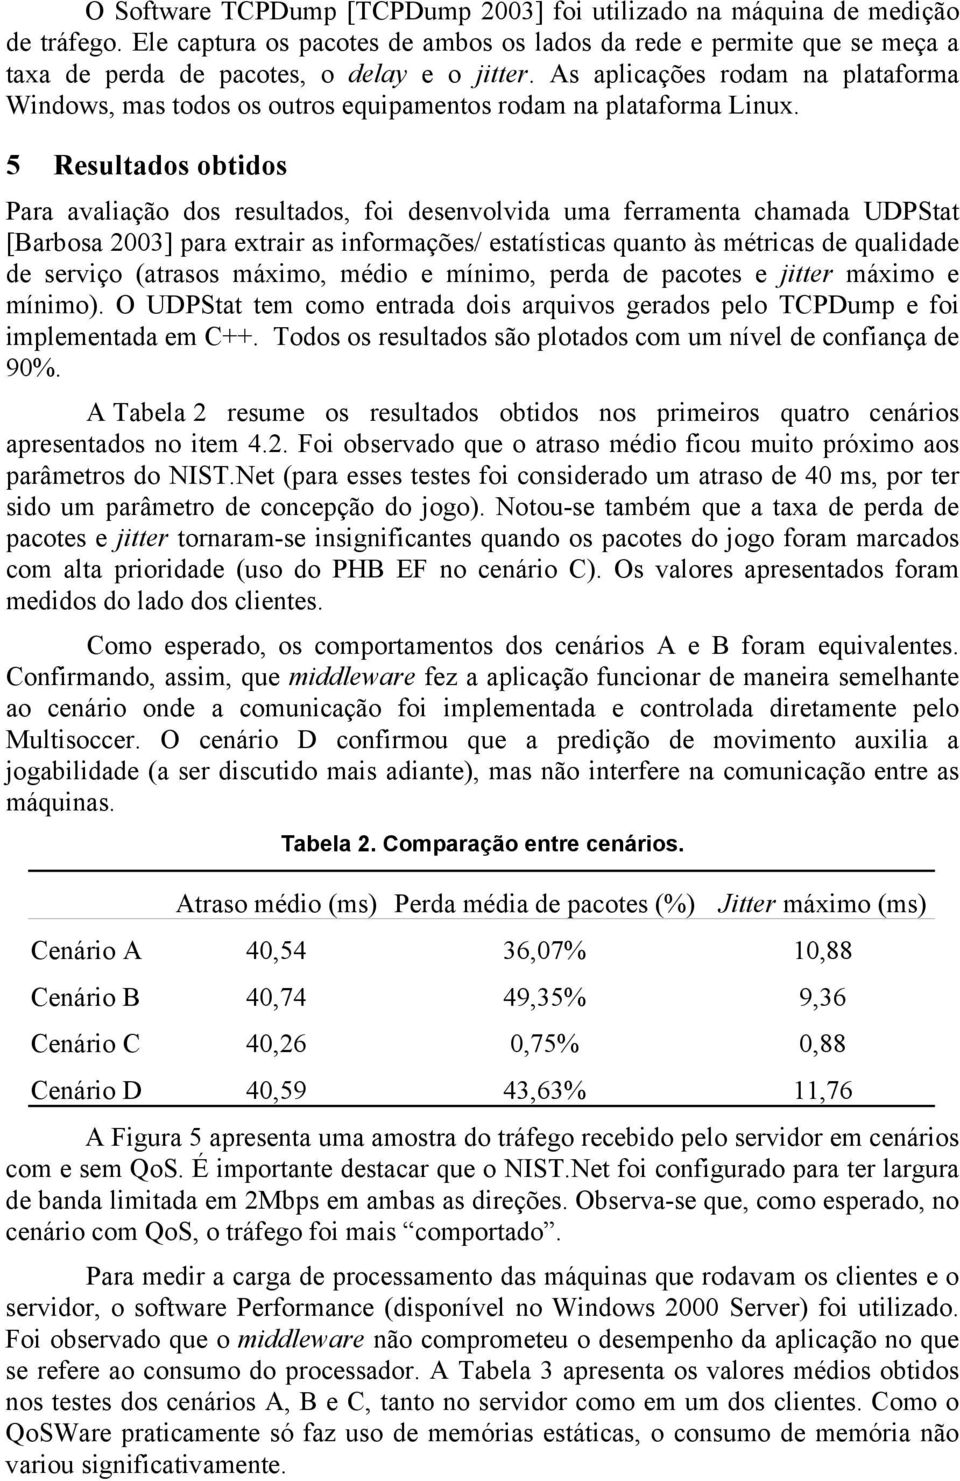 5 Resultados obtidos Para avaliação dos resultados, foi desenvolvida uma ferramenta chamada UDPStat [Barbosa 2003] para extrair as informações/ estatísticas quanto às métricas de qualidade de serviço